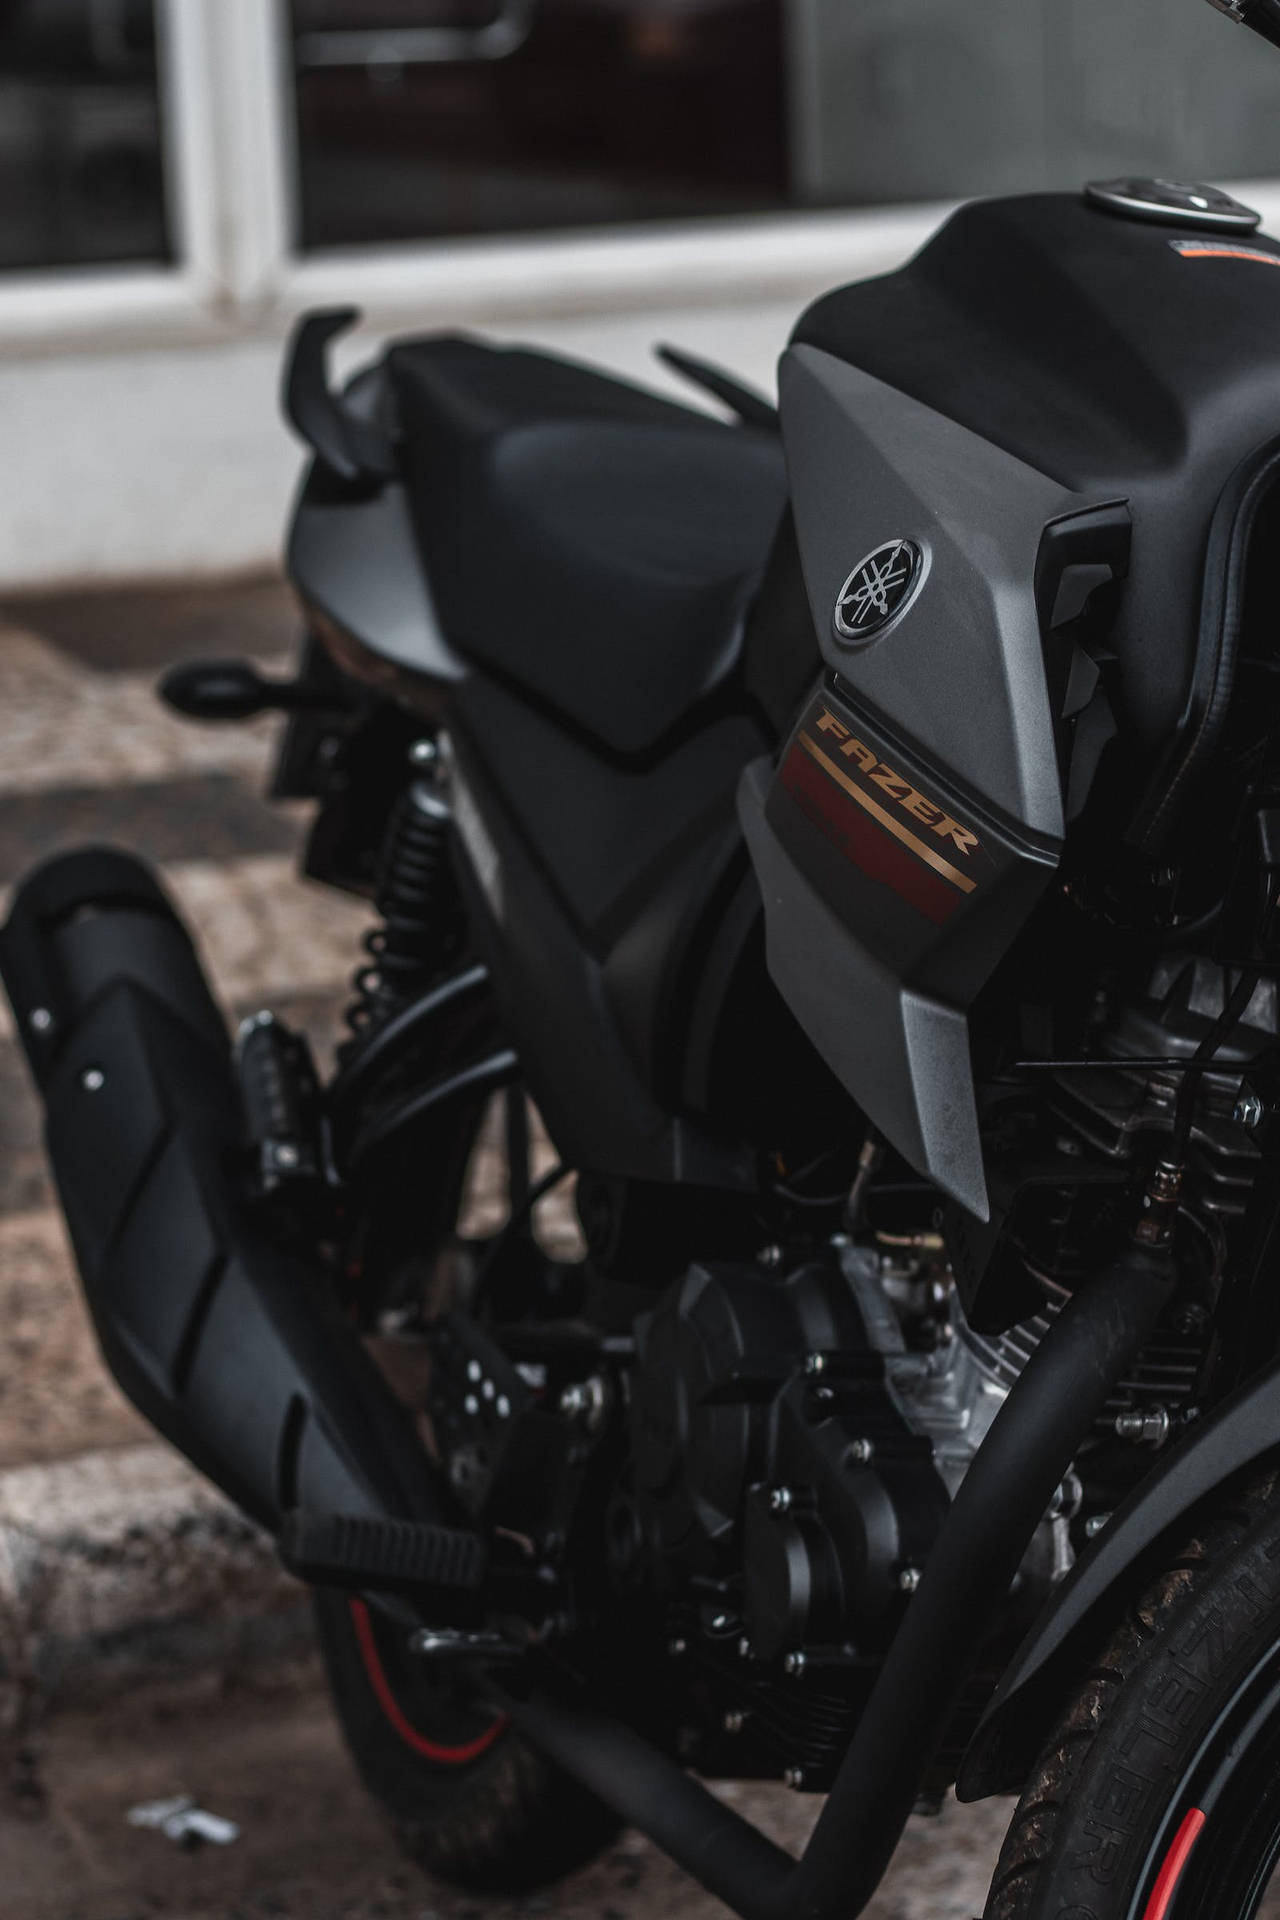 Download Matte Black Yamaha Mt 15 Motorcycle Wallpaper 